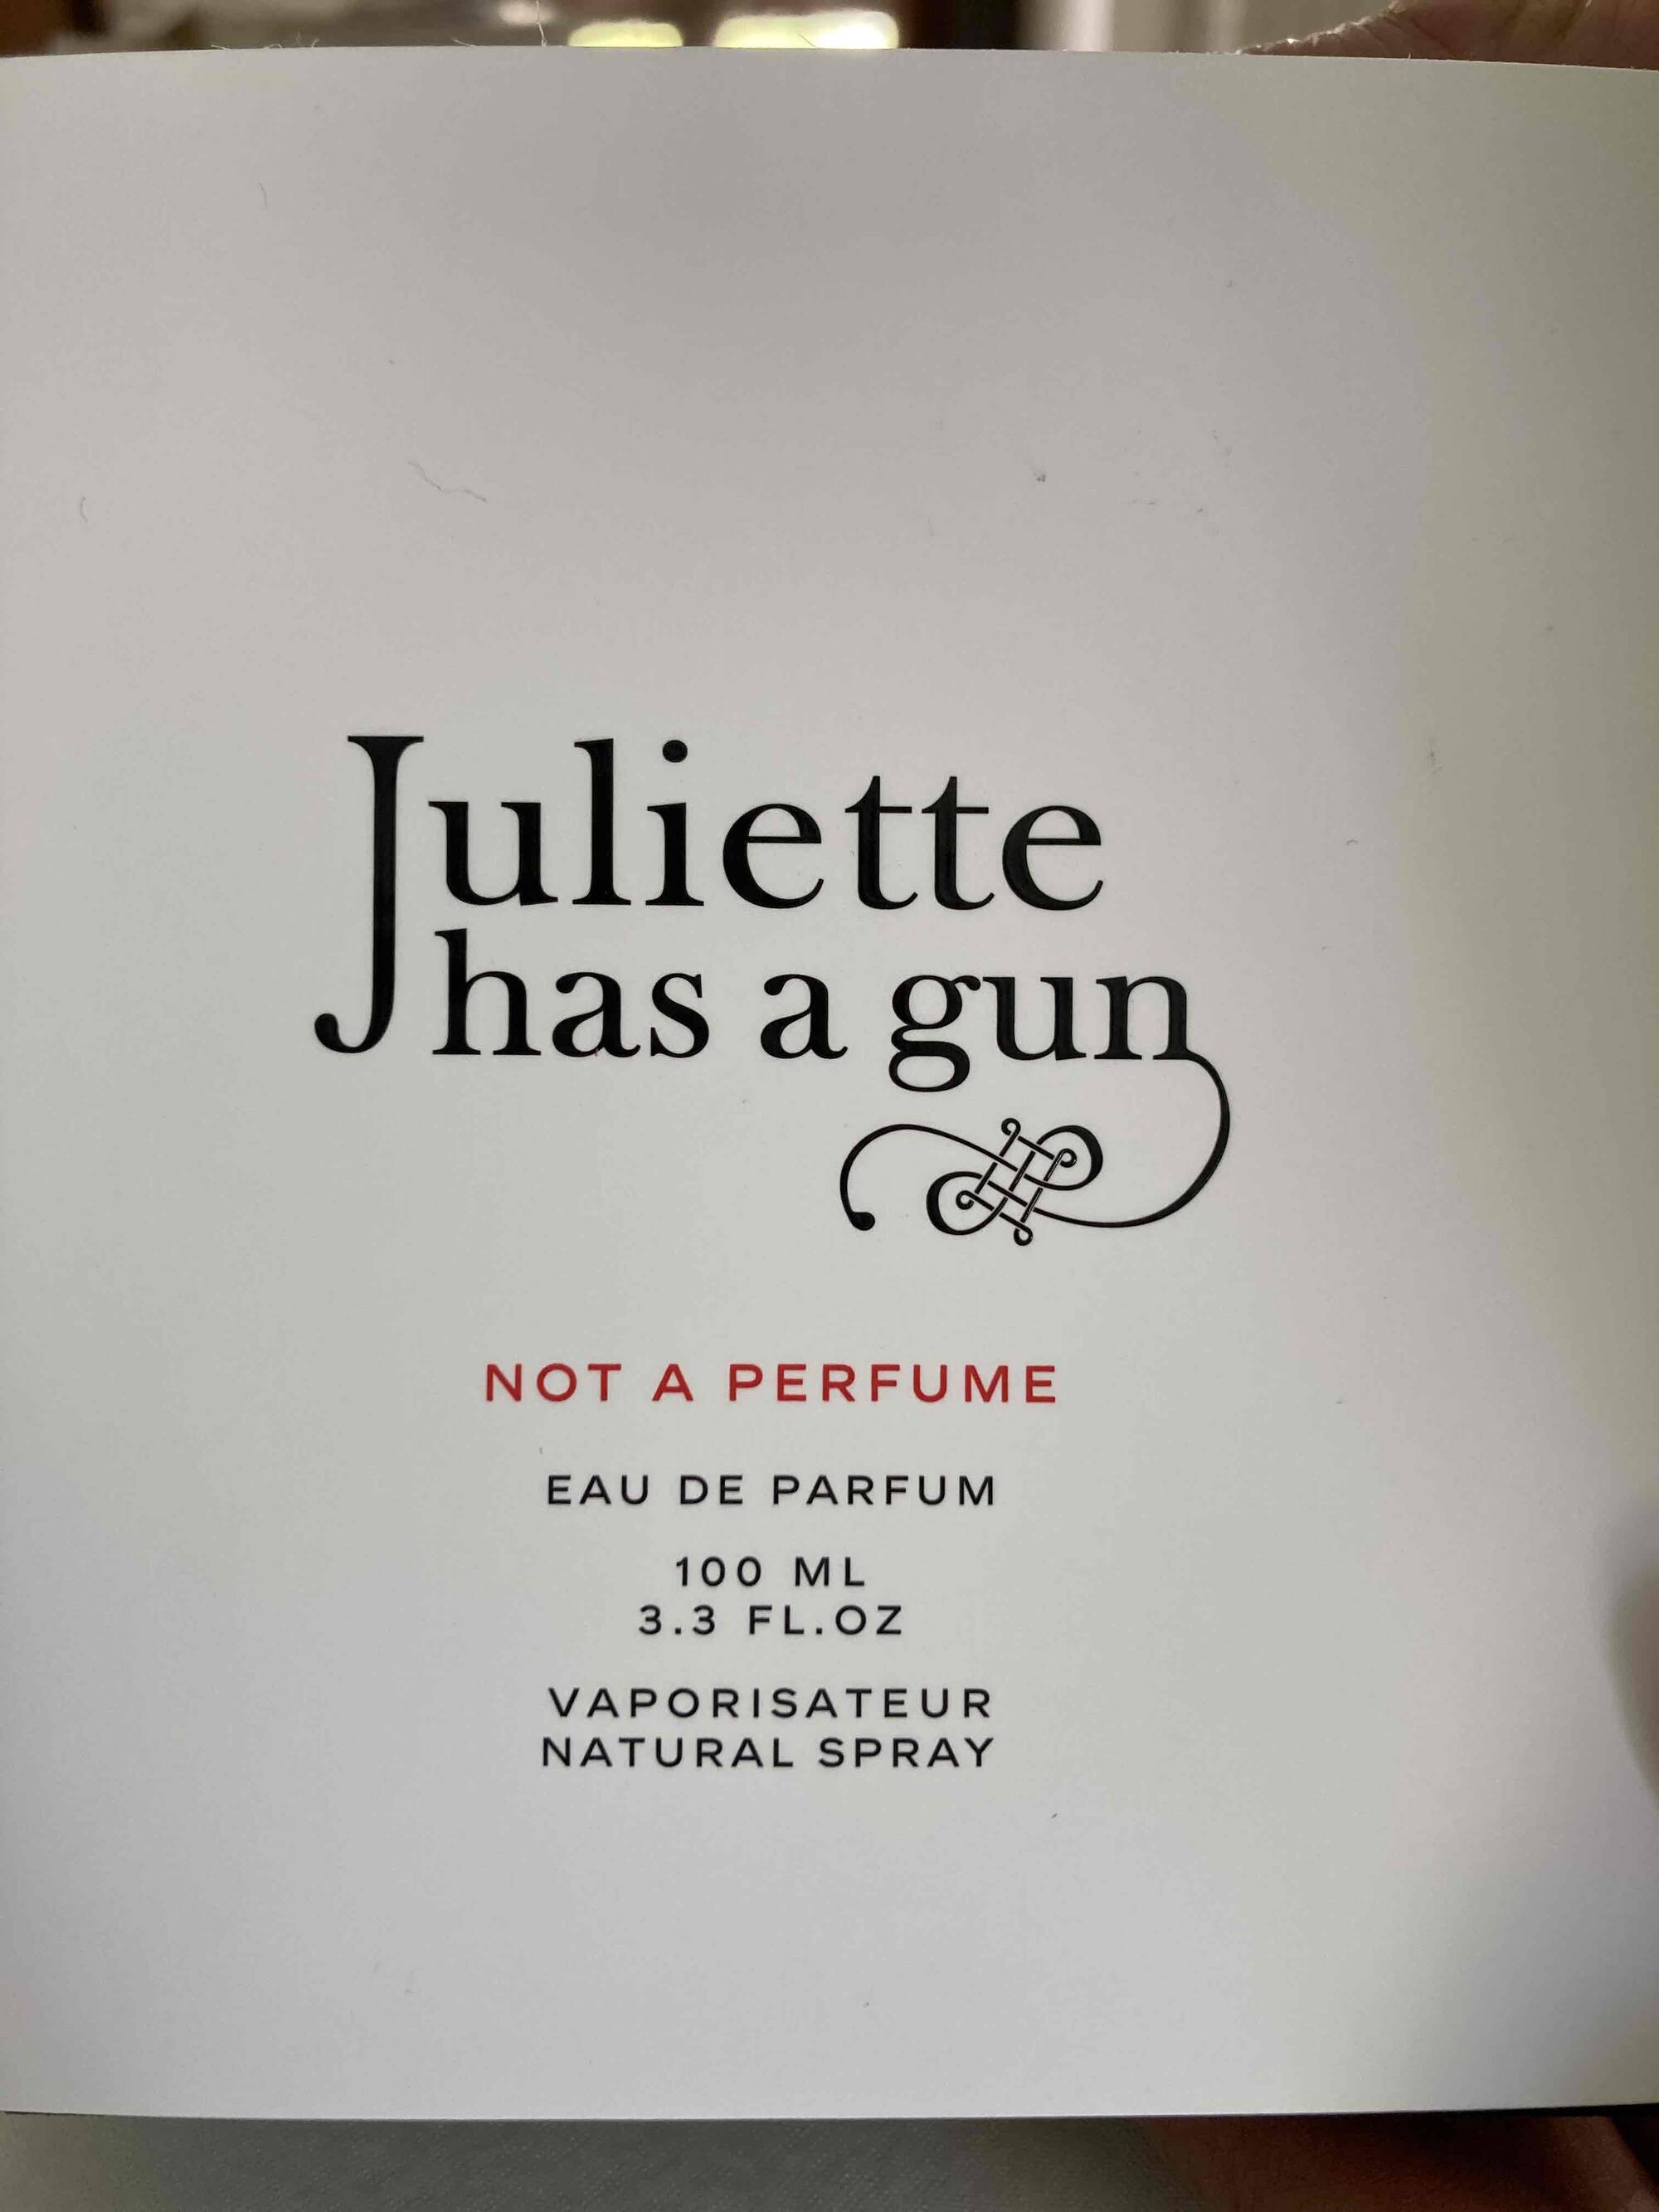 JULIETTE HAS A GUN - Eau de parfum